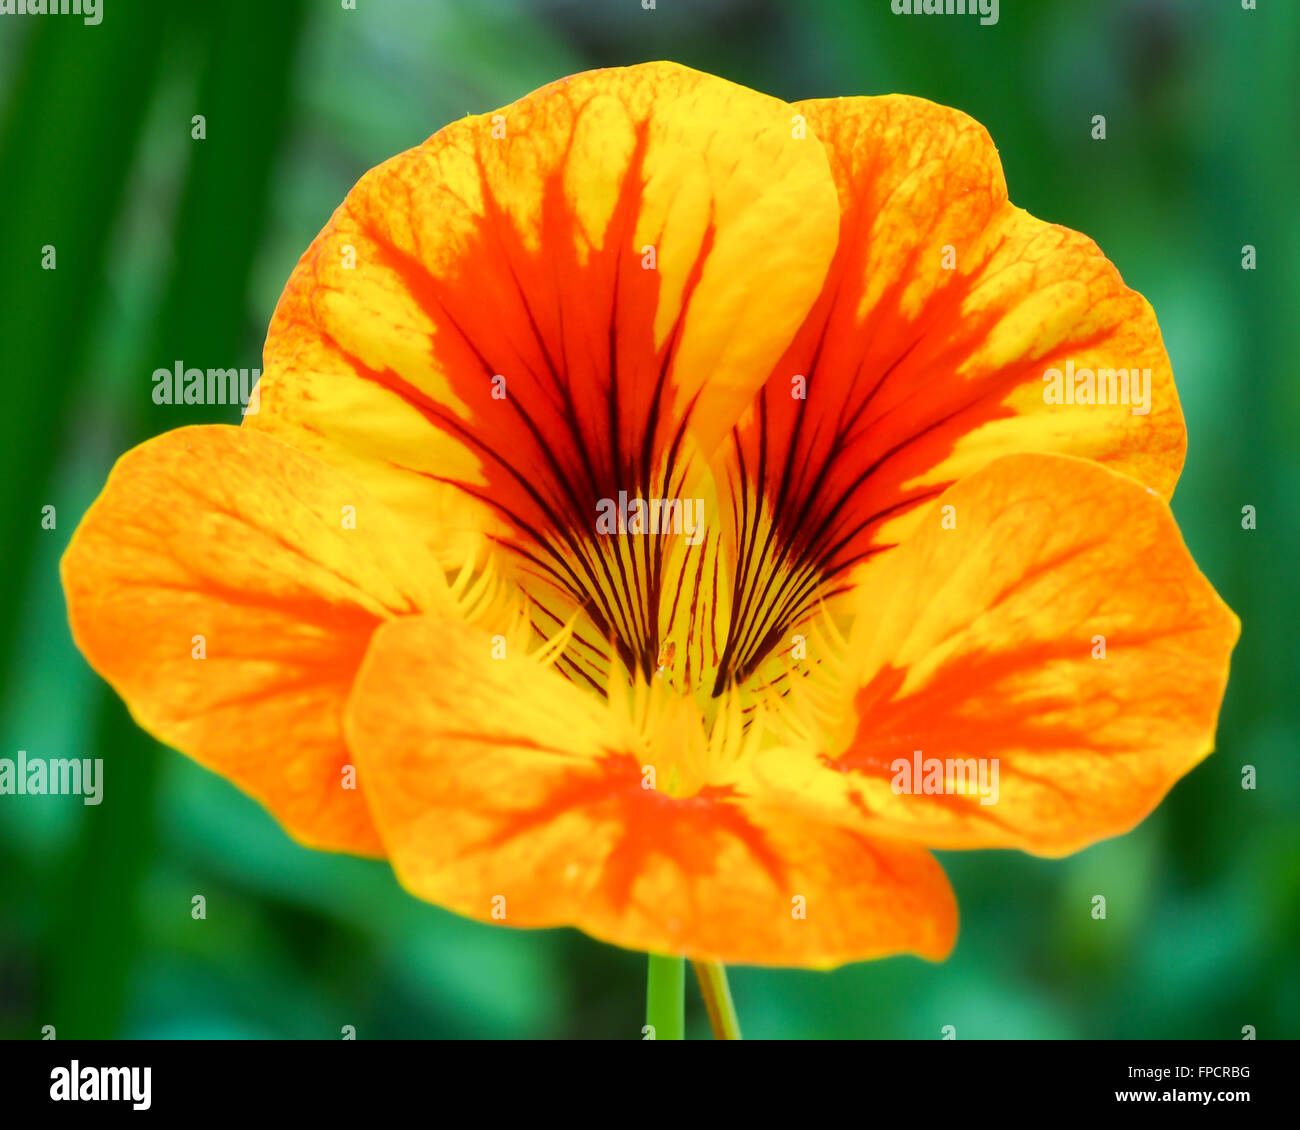 Nasturtium Flower Orange and Yellow 2 Stock Photo